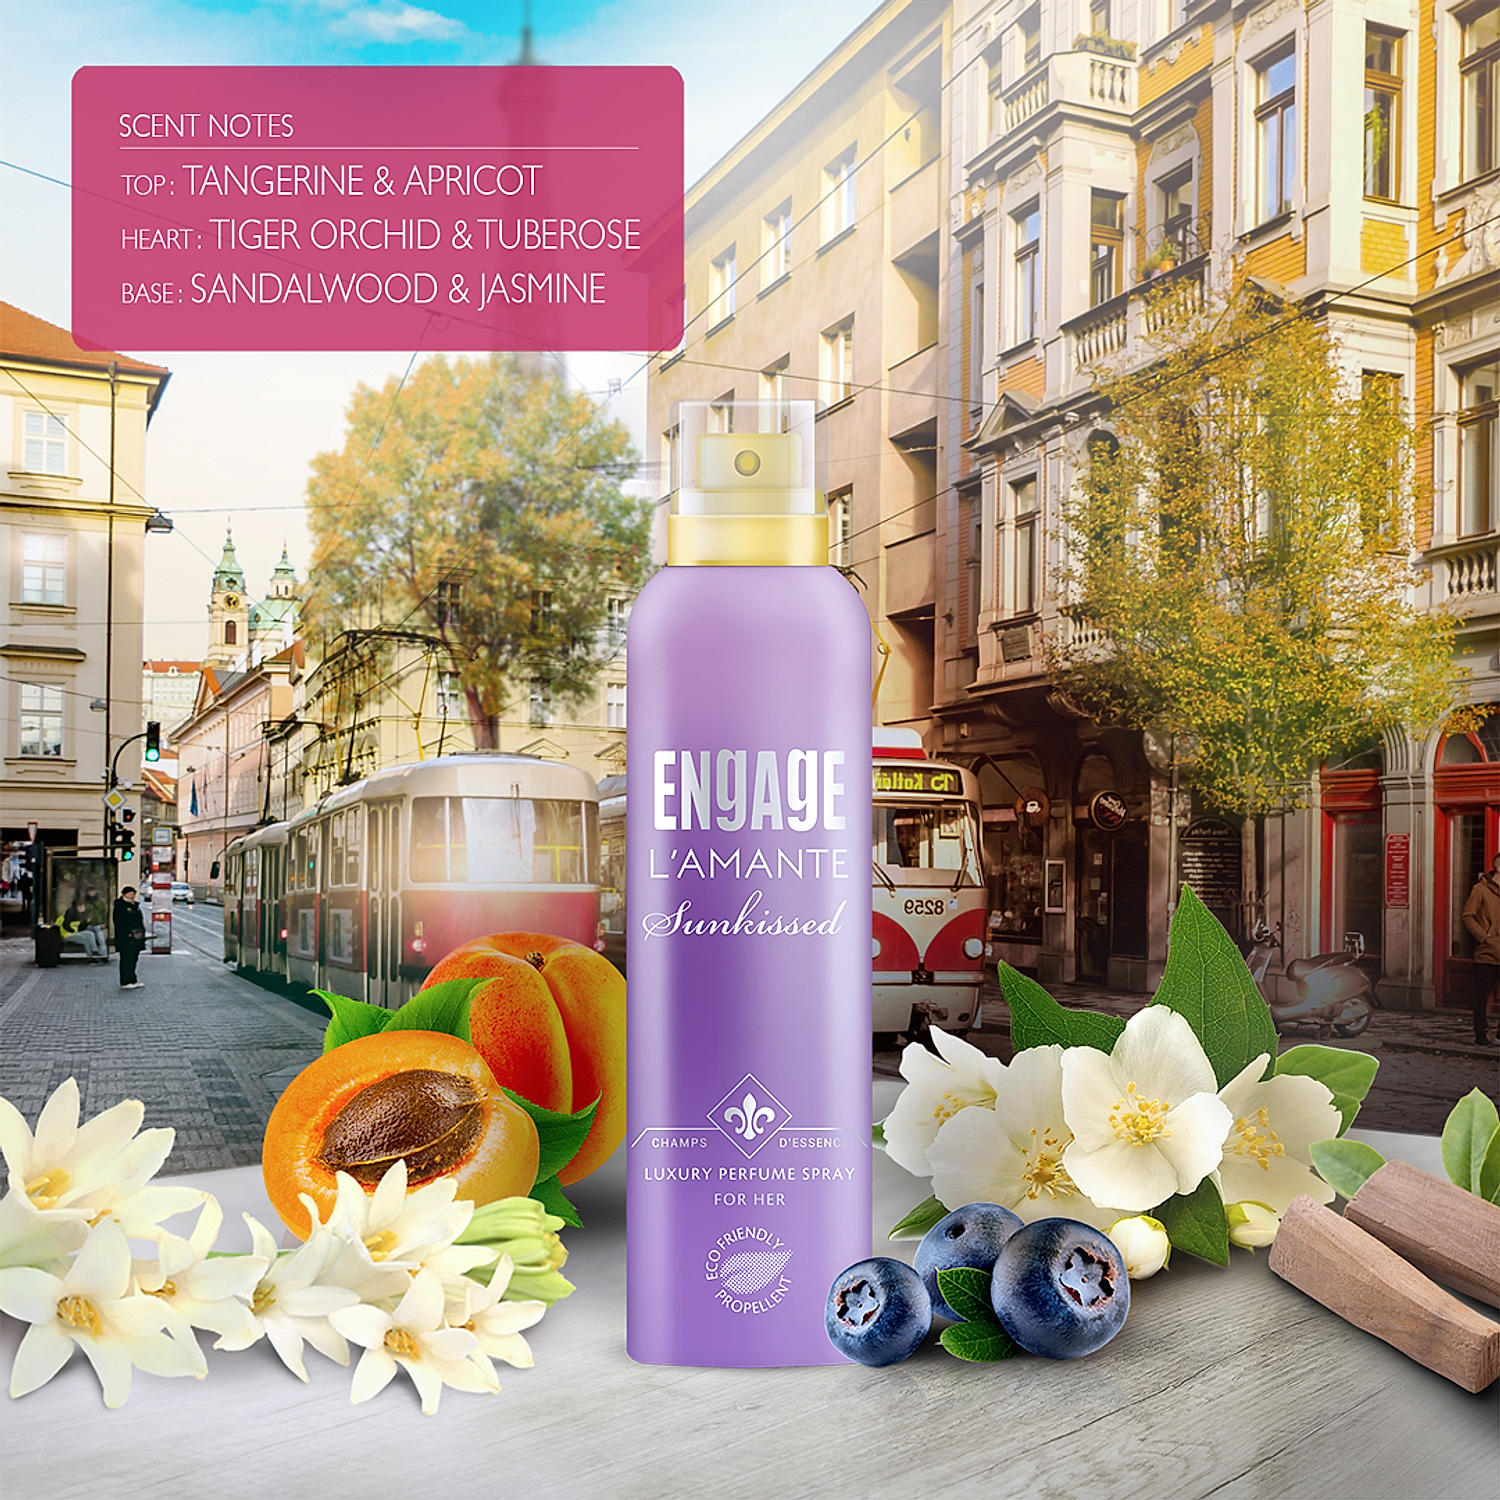 Engage L'amante Sunkissed Eau De Parfum for Women, Floral, Long Lasting and  Premium, Skin Friendly - 100ml